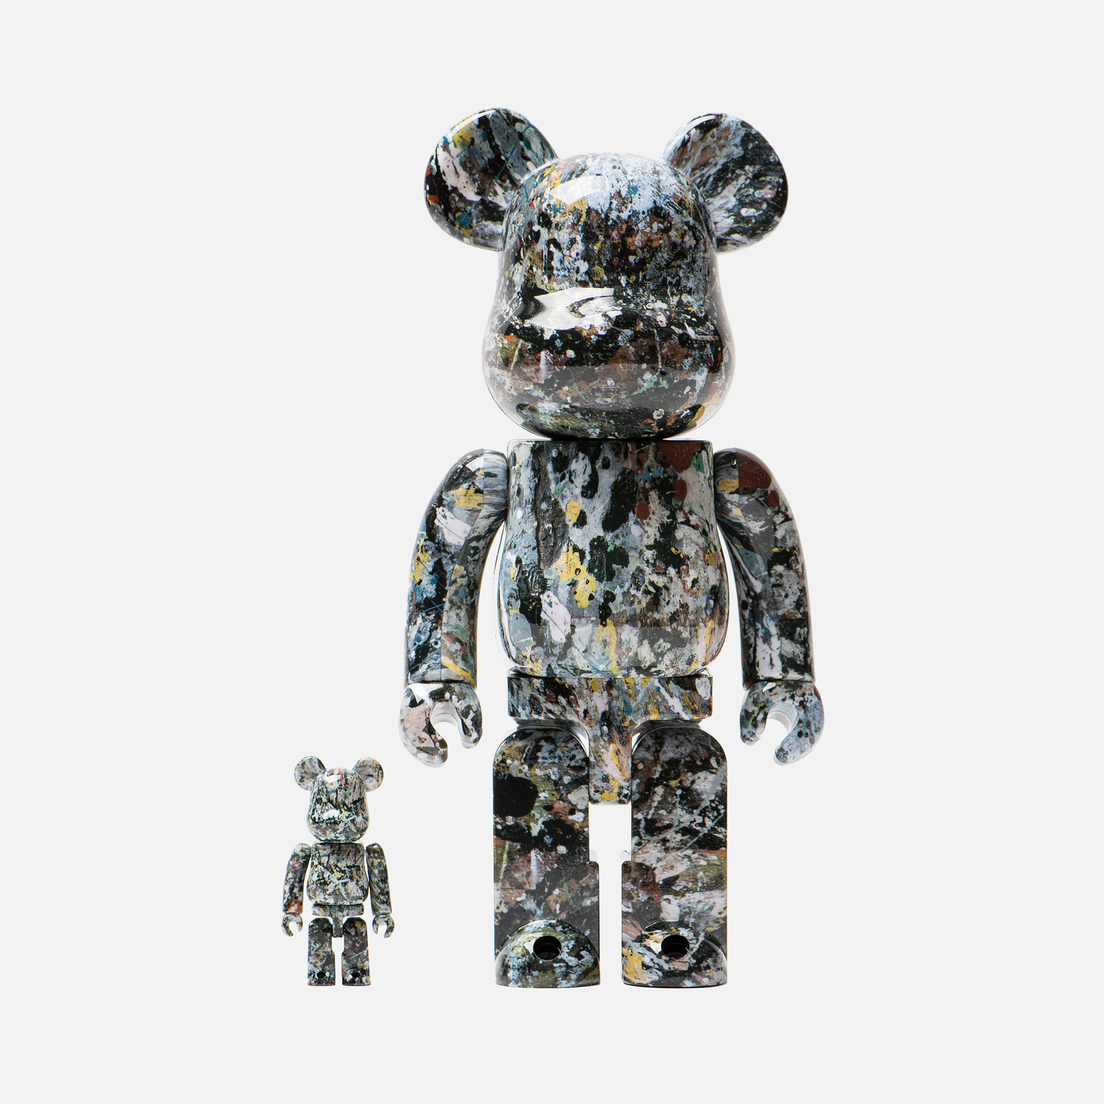 Medicom Toy Игрушка Jackson Pollock Ver. 2.0 100% & 400%